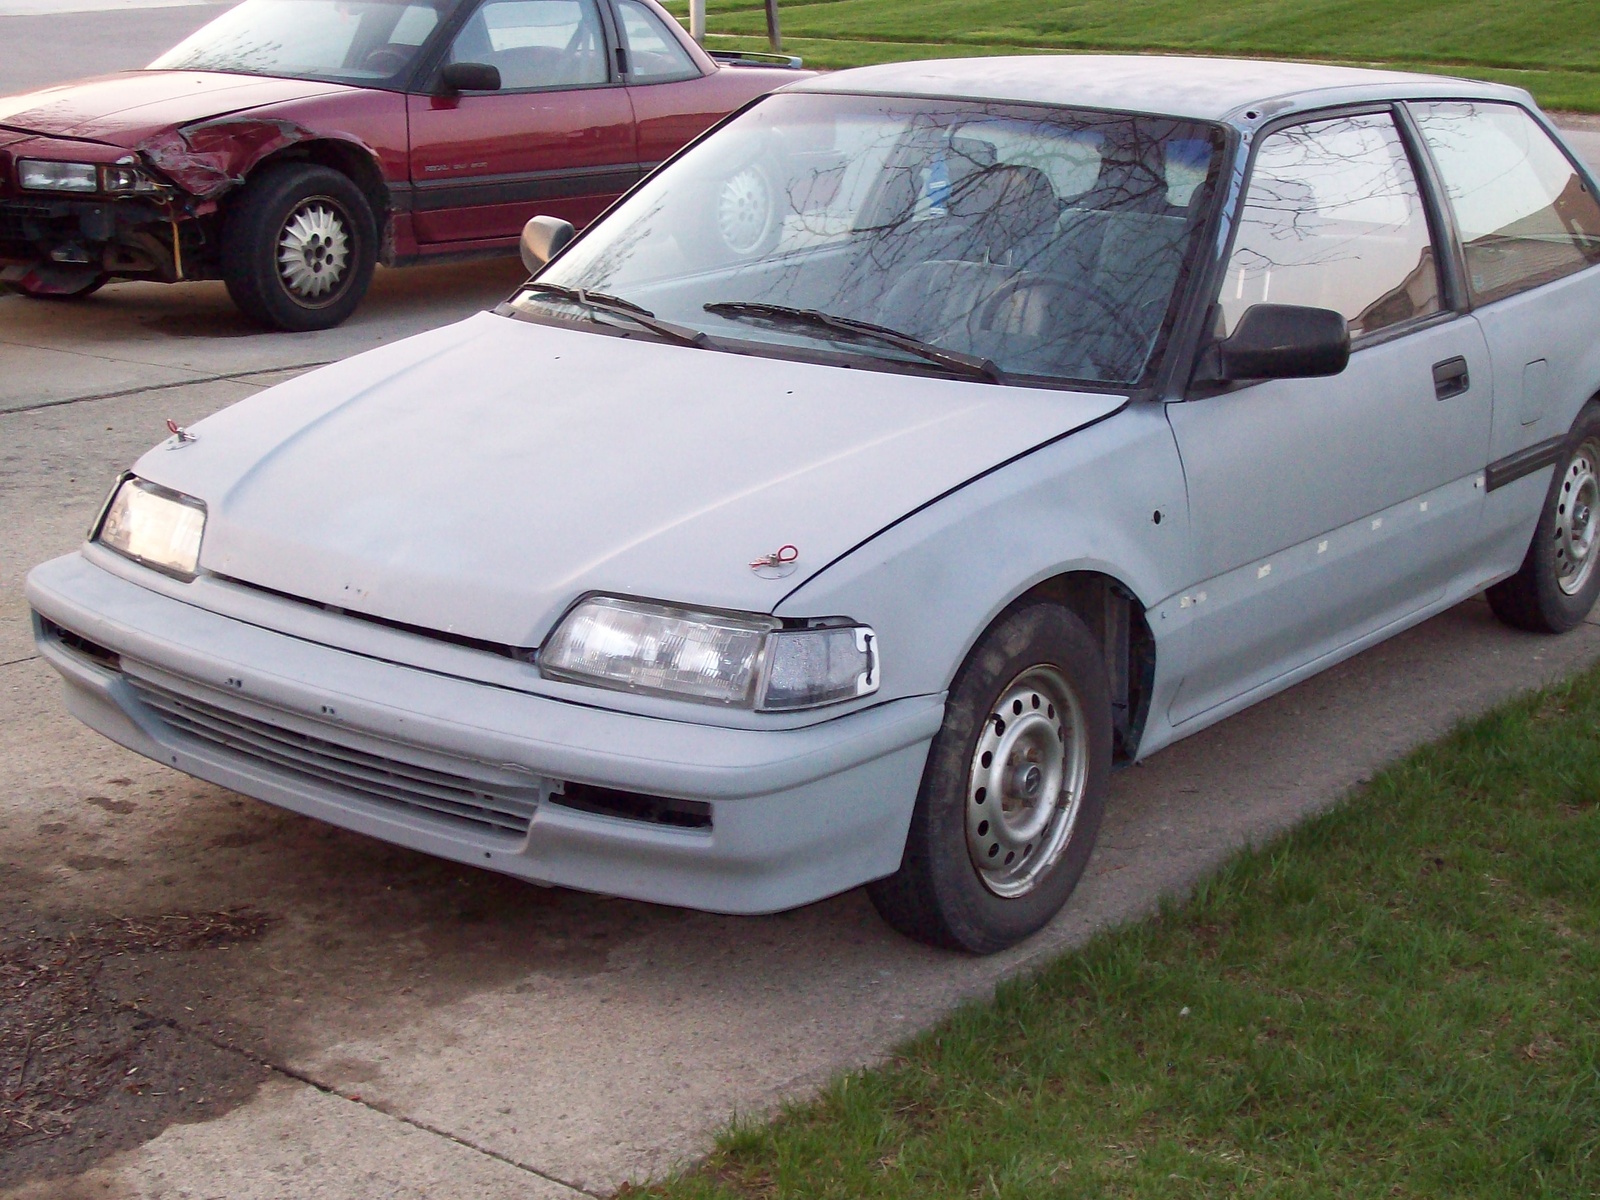 1989 Honda civic dx hatchback mpg #2